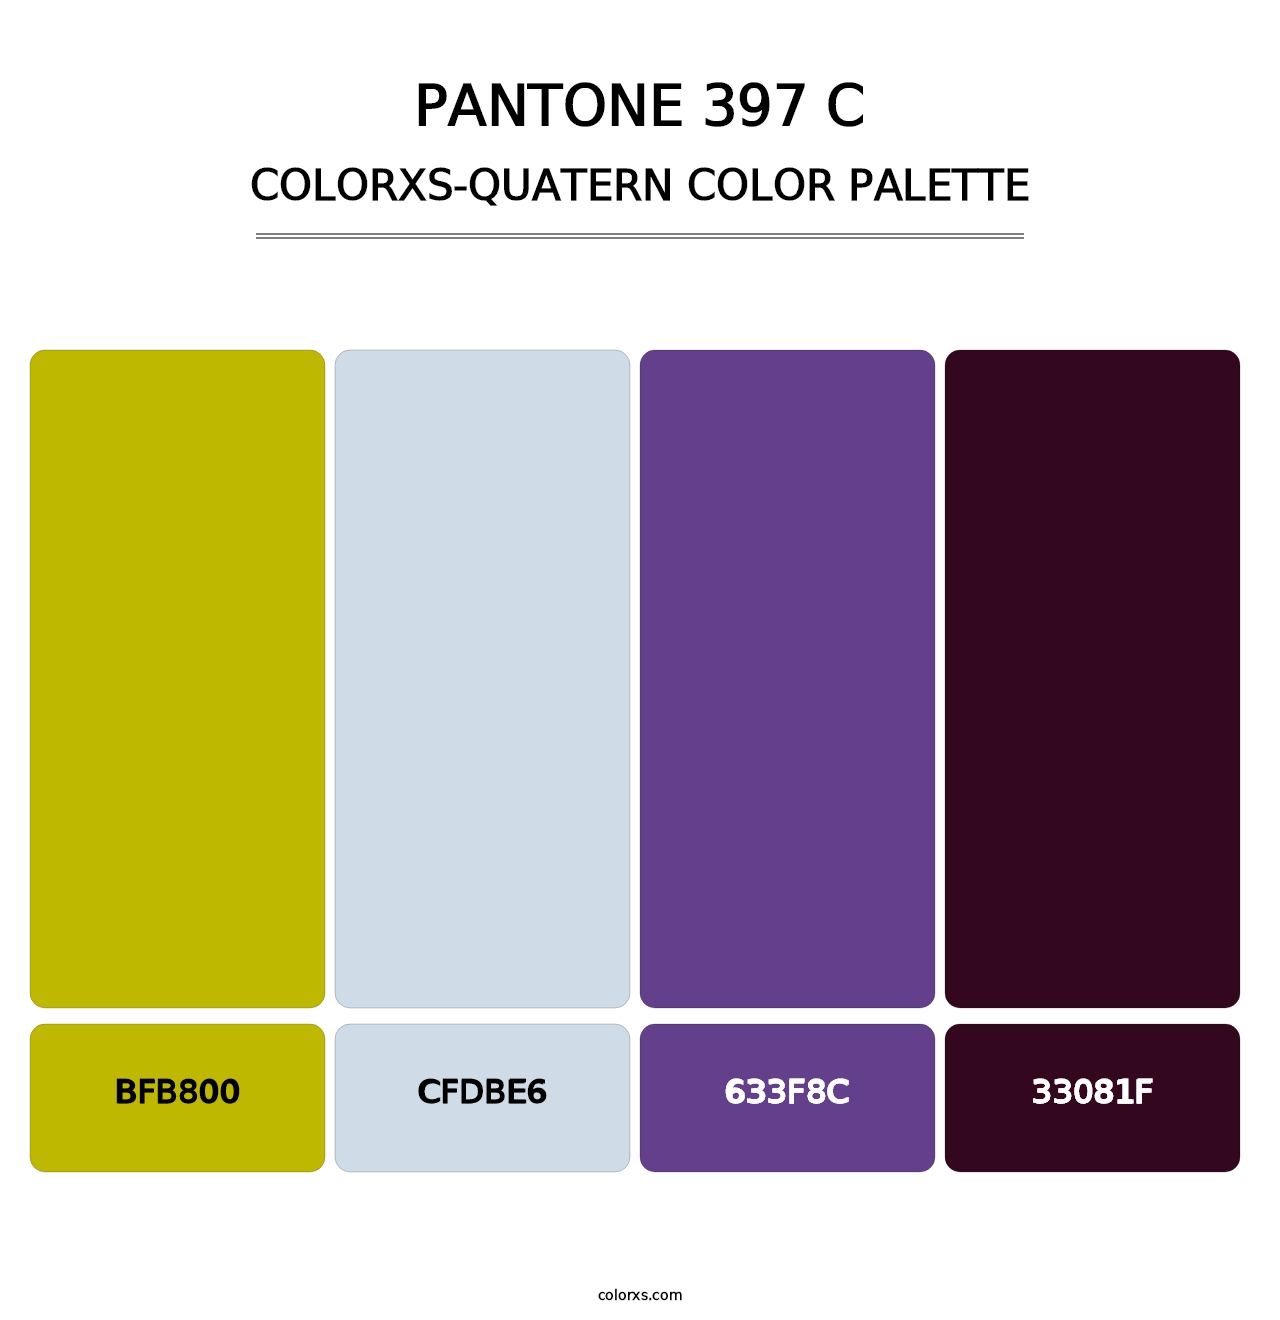 PANTONE 397 C - Colorxs Quatern Palette